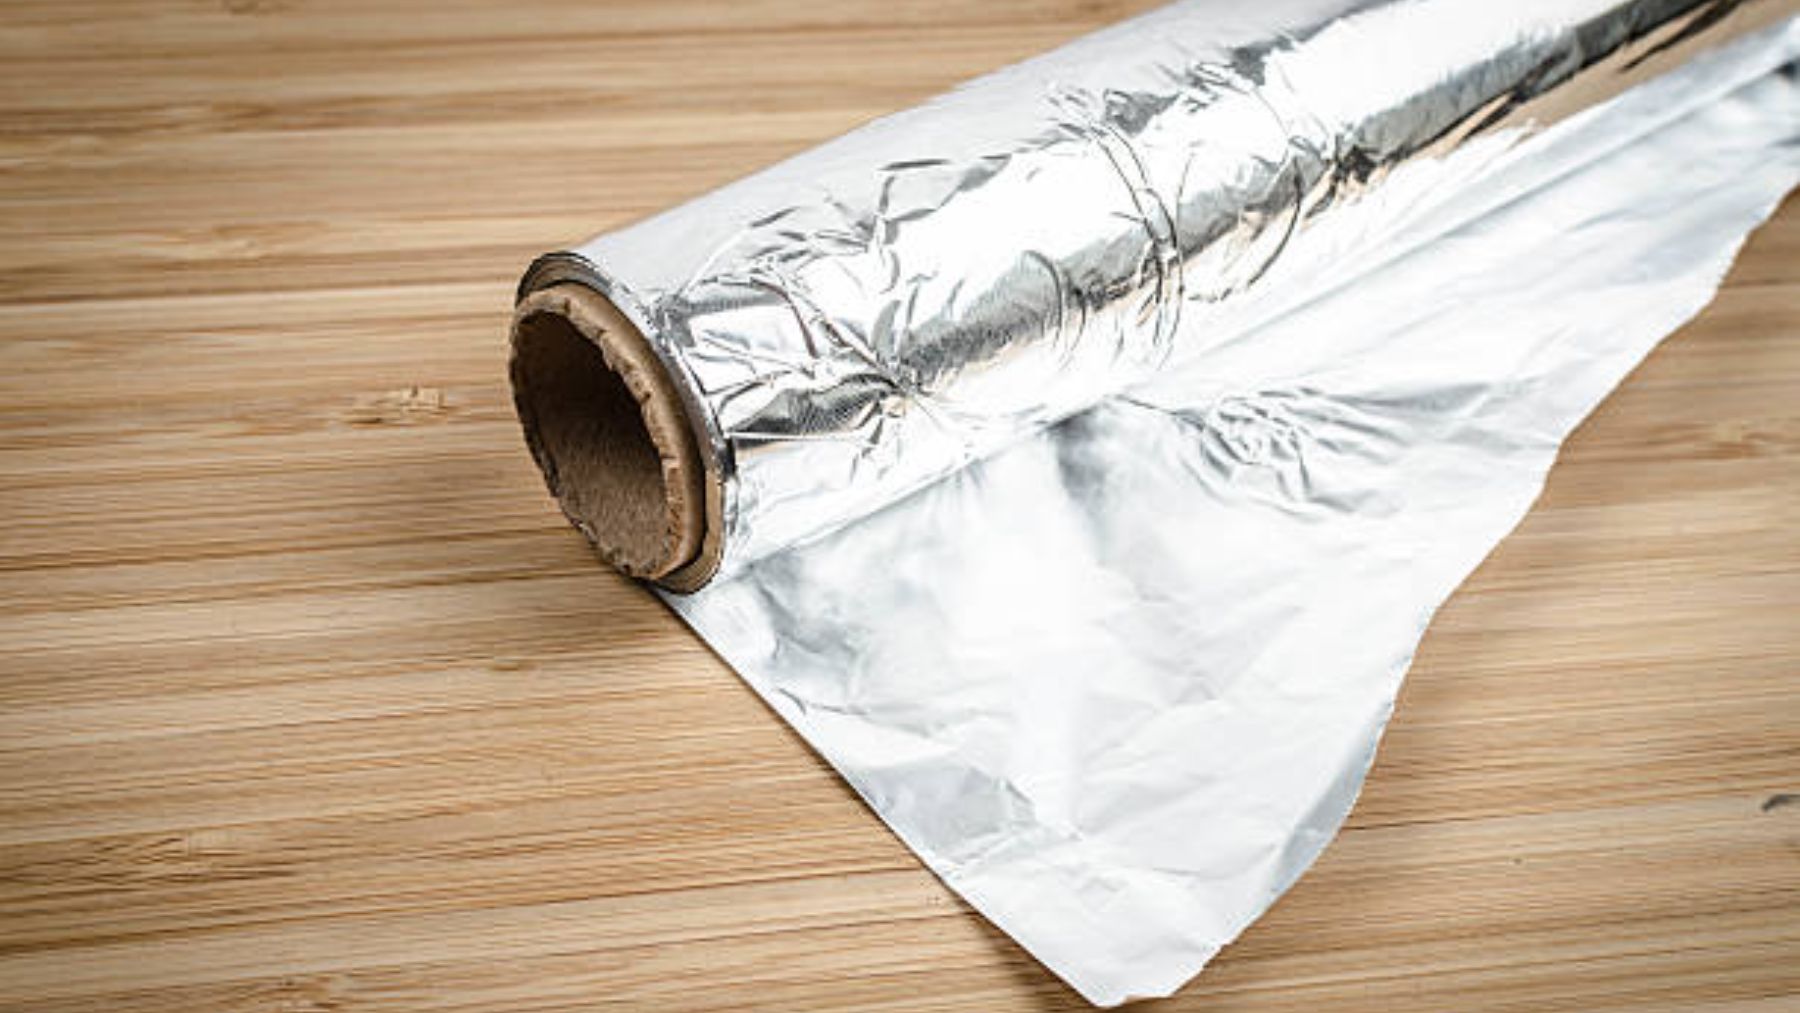 Descongelar tu congelador en minutos es posible gracias al papel de aluminio